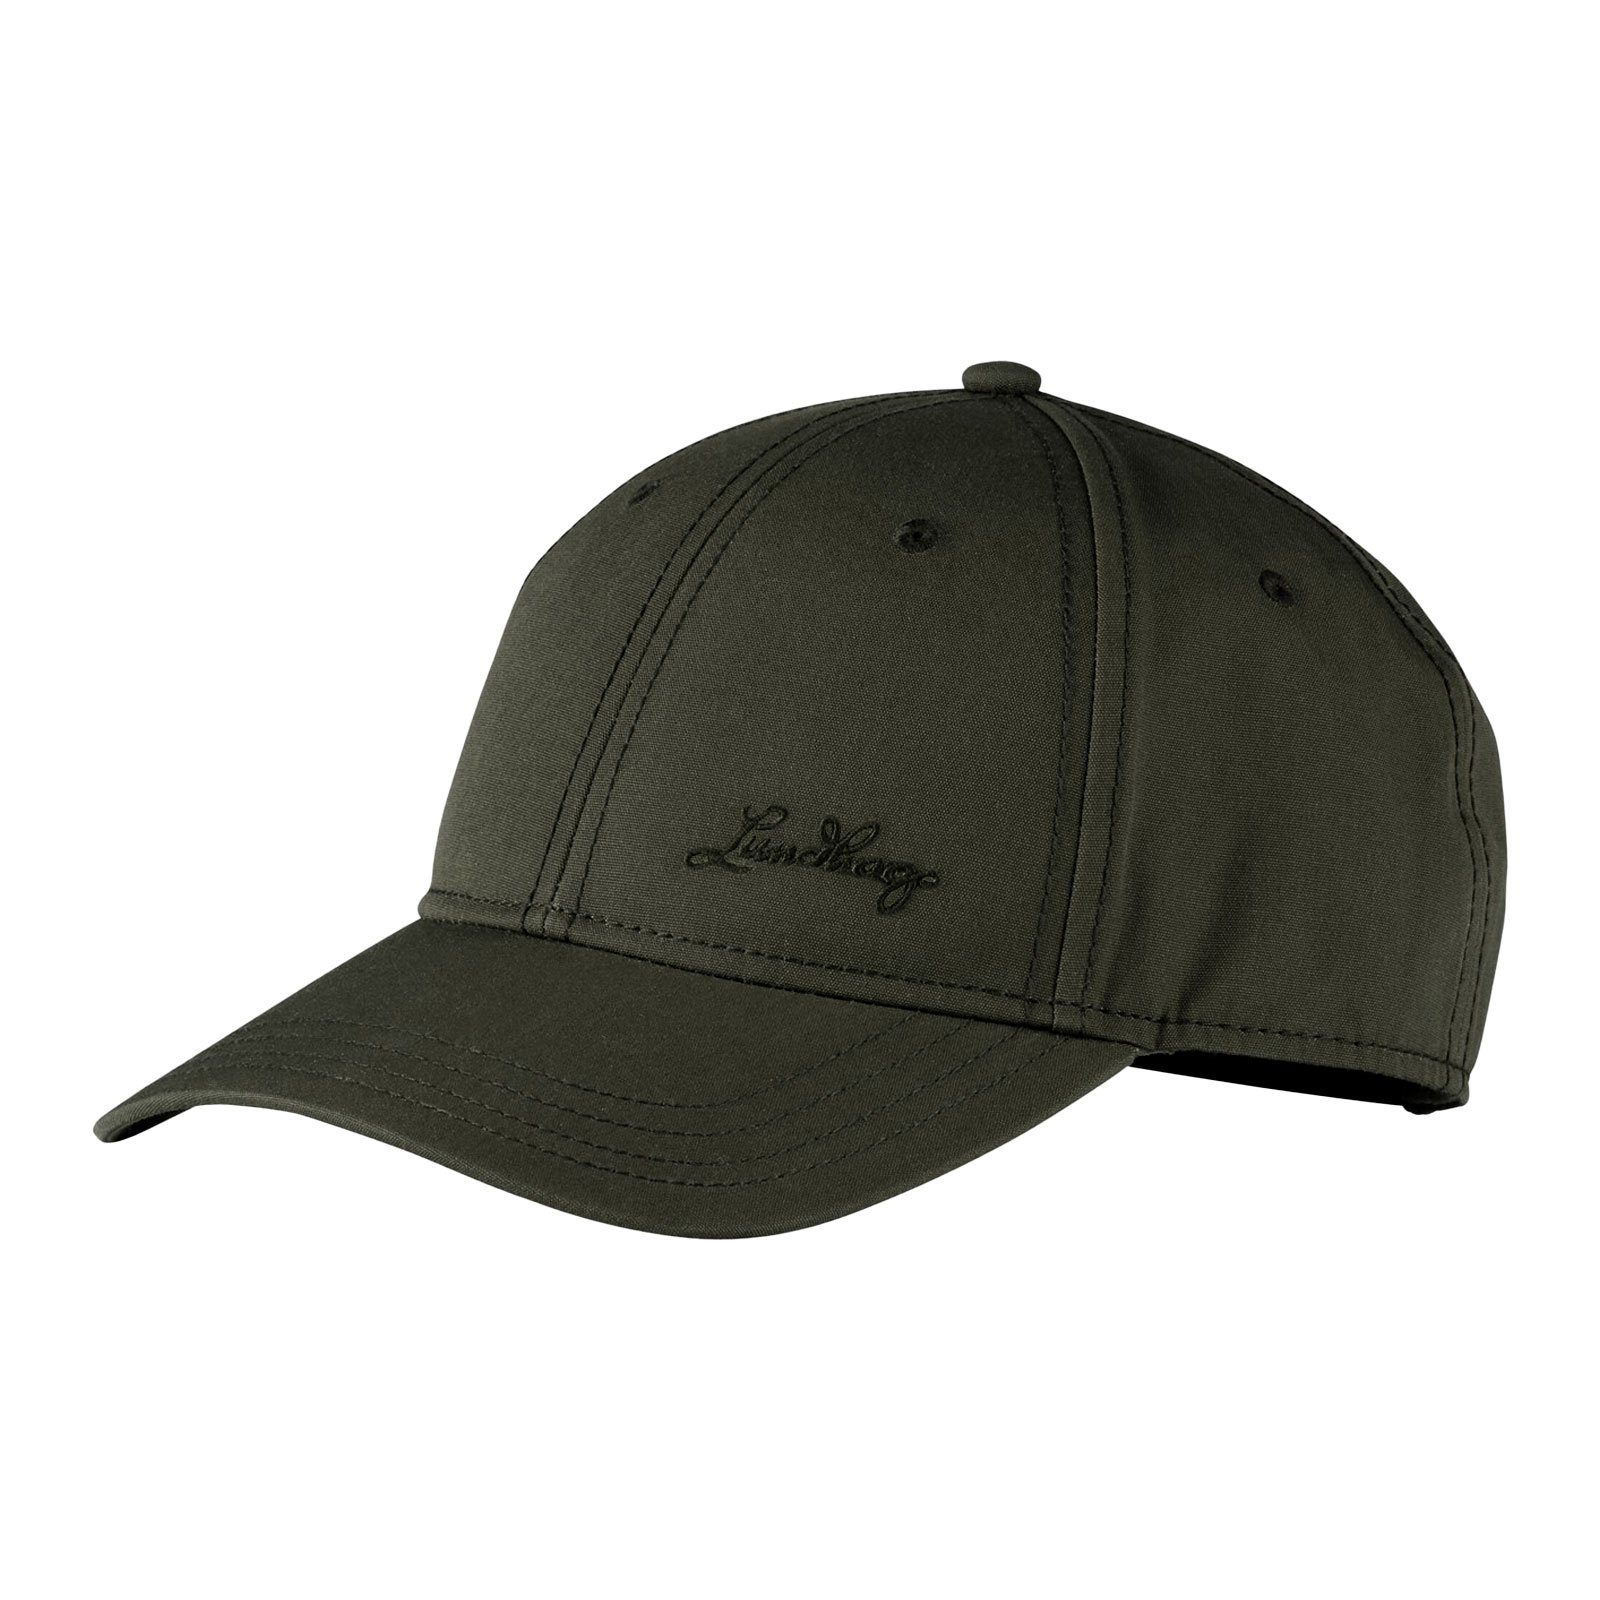 Lundhags Baseball Cap Base II Cap mit gesticktem Marken-Schriftzug olive